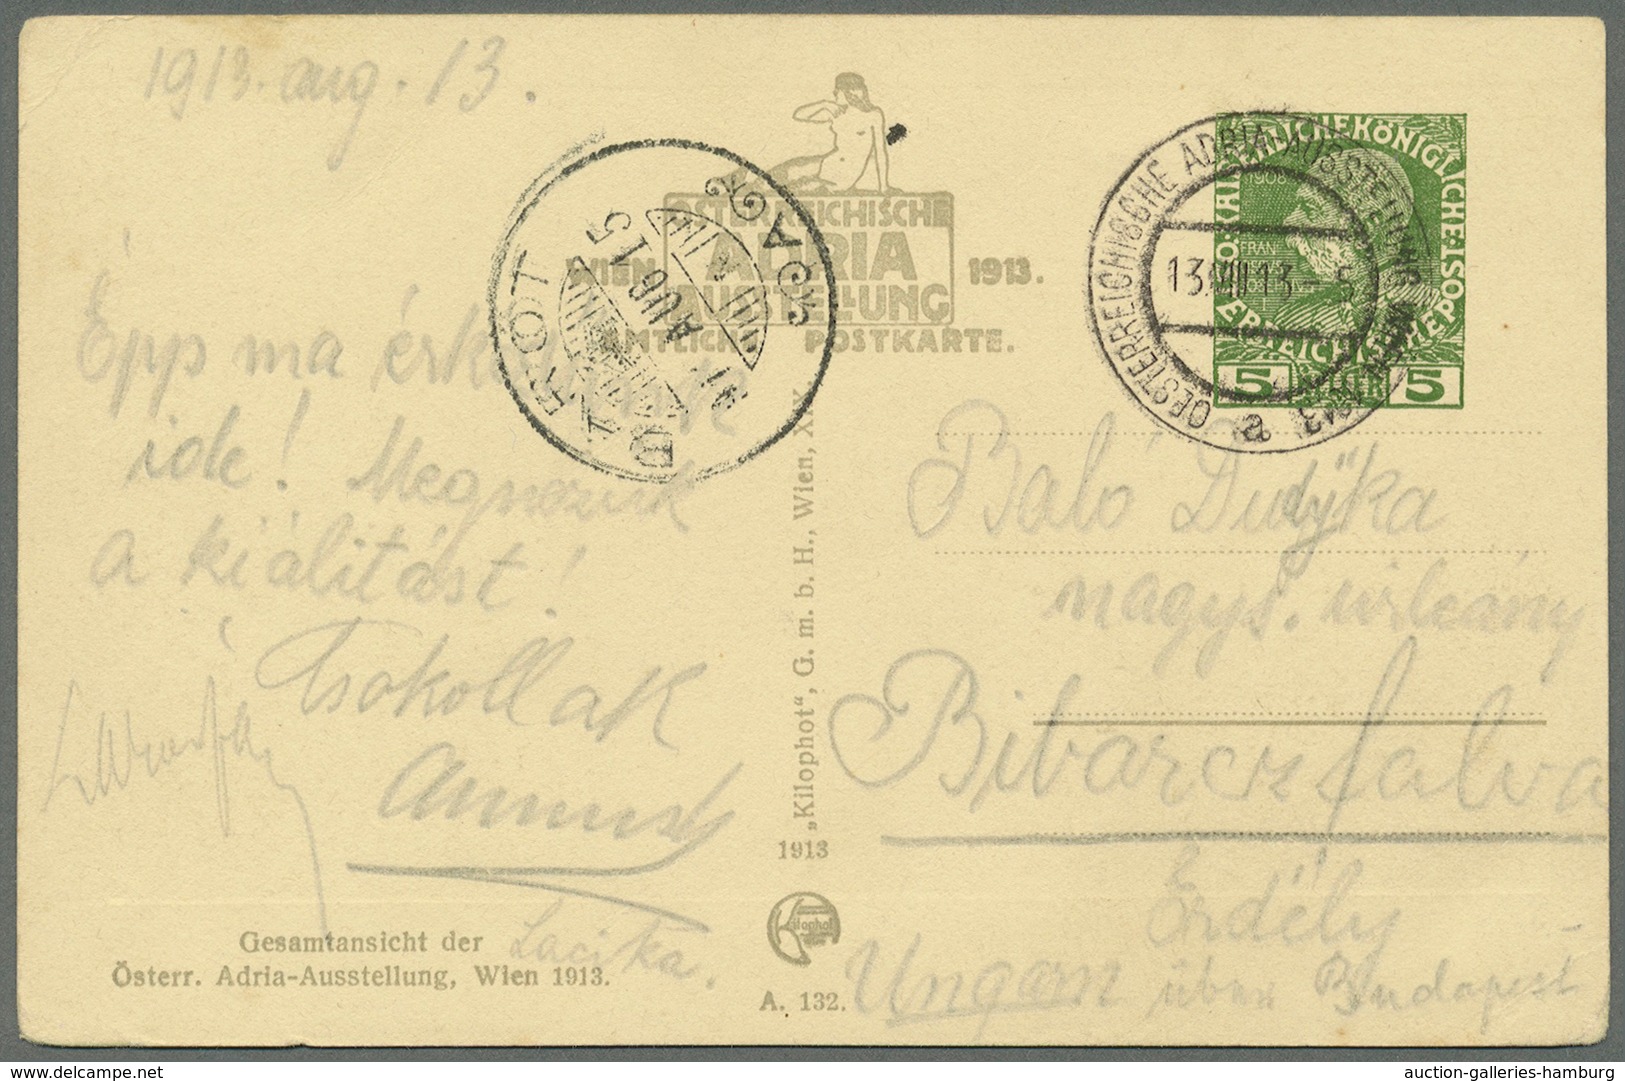 Österreich - Privatganzsachen: 1913 (14.6.-5.10.), fünf offizielle Ausstellungs-Postkarten zur öster